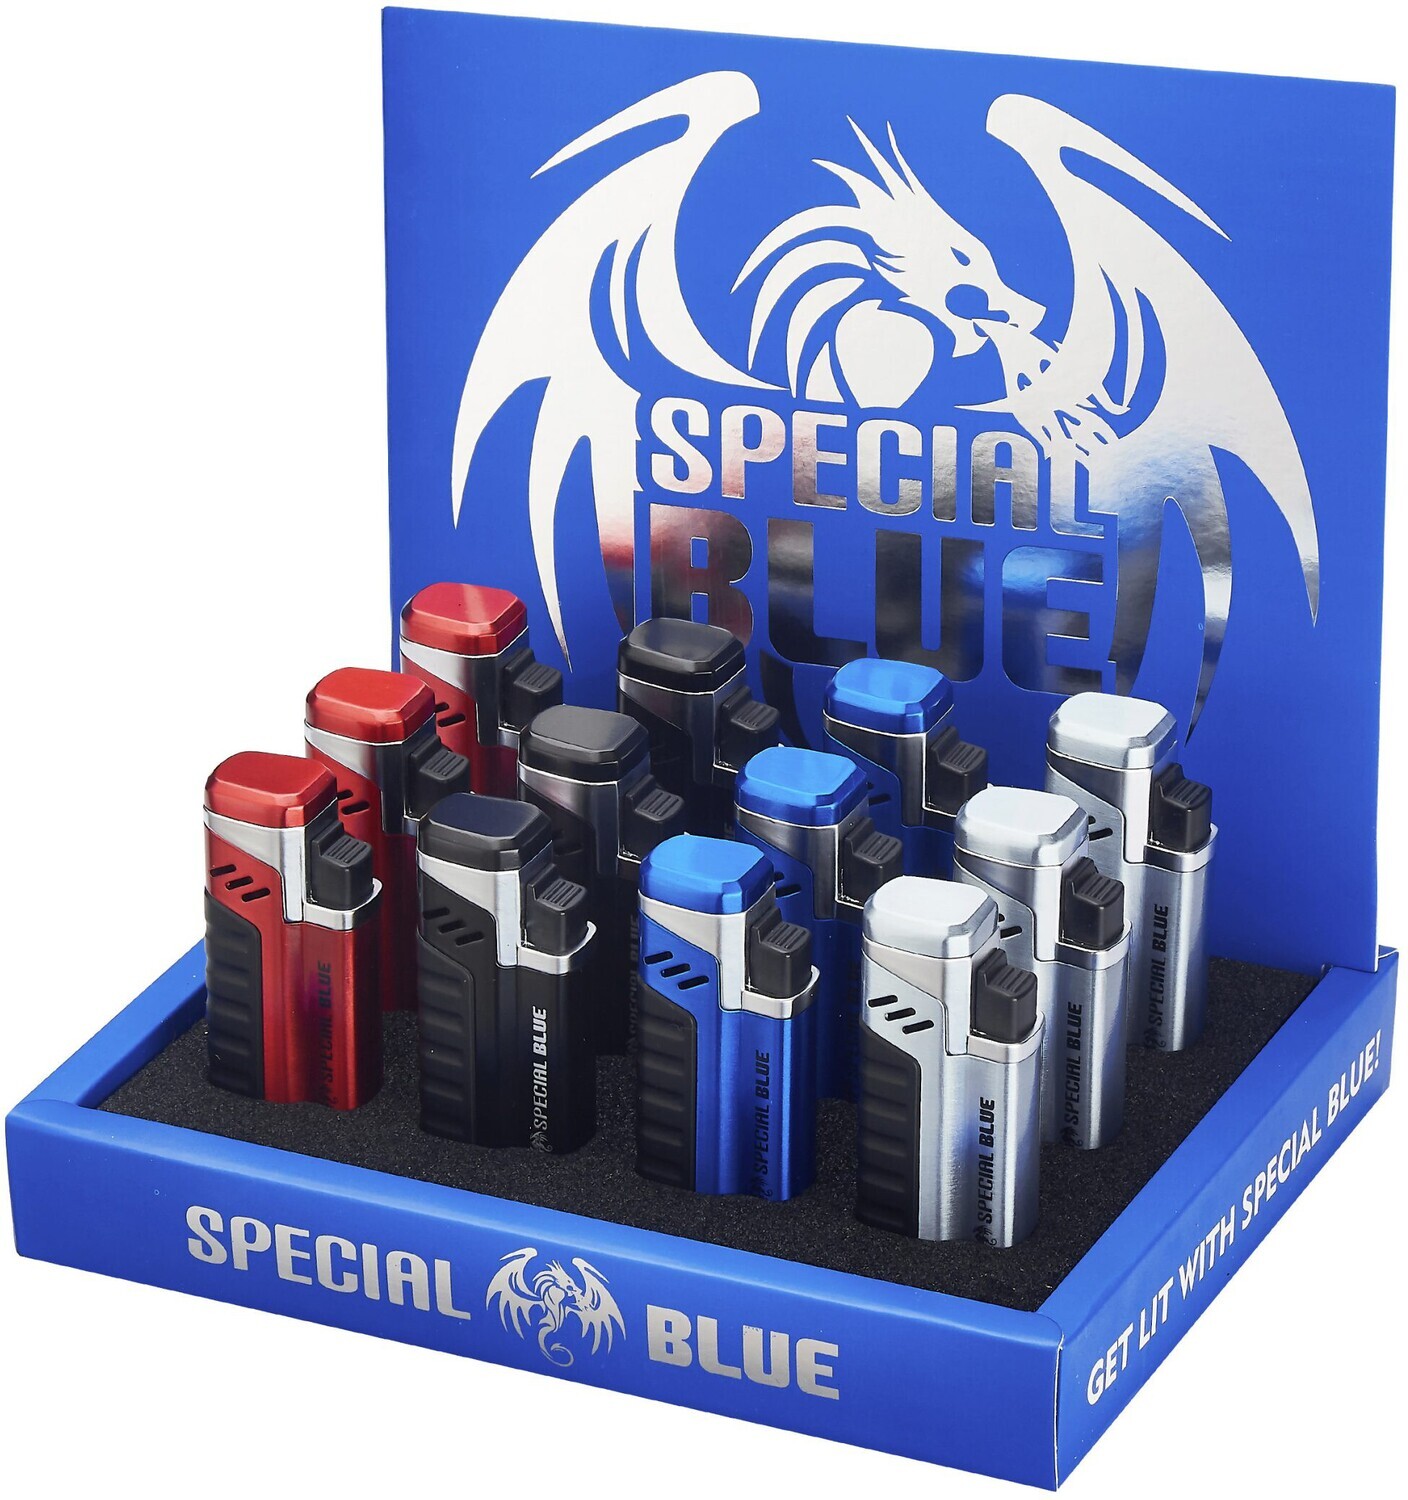 Special Blue 3T Cigar Punch Lighter